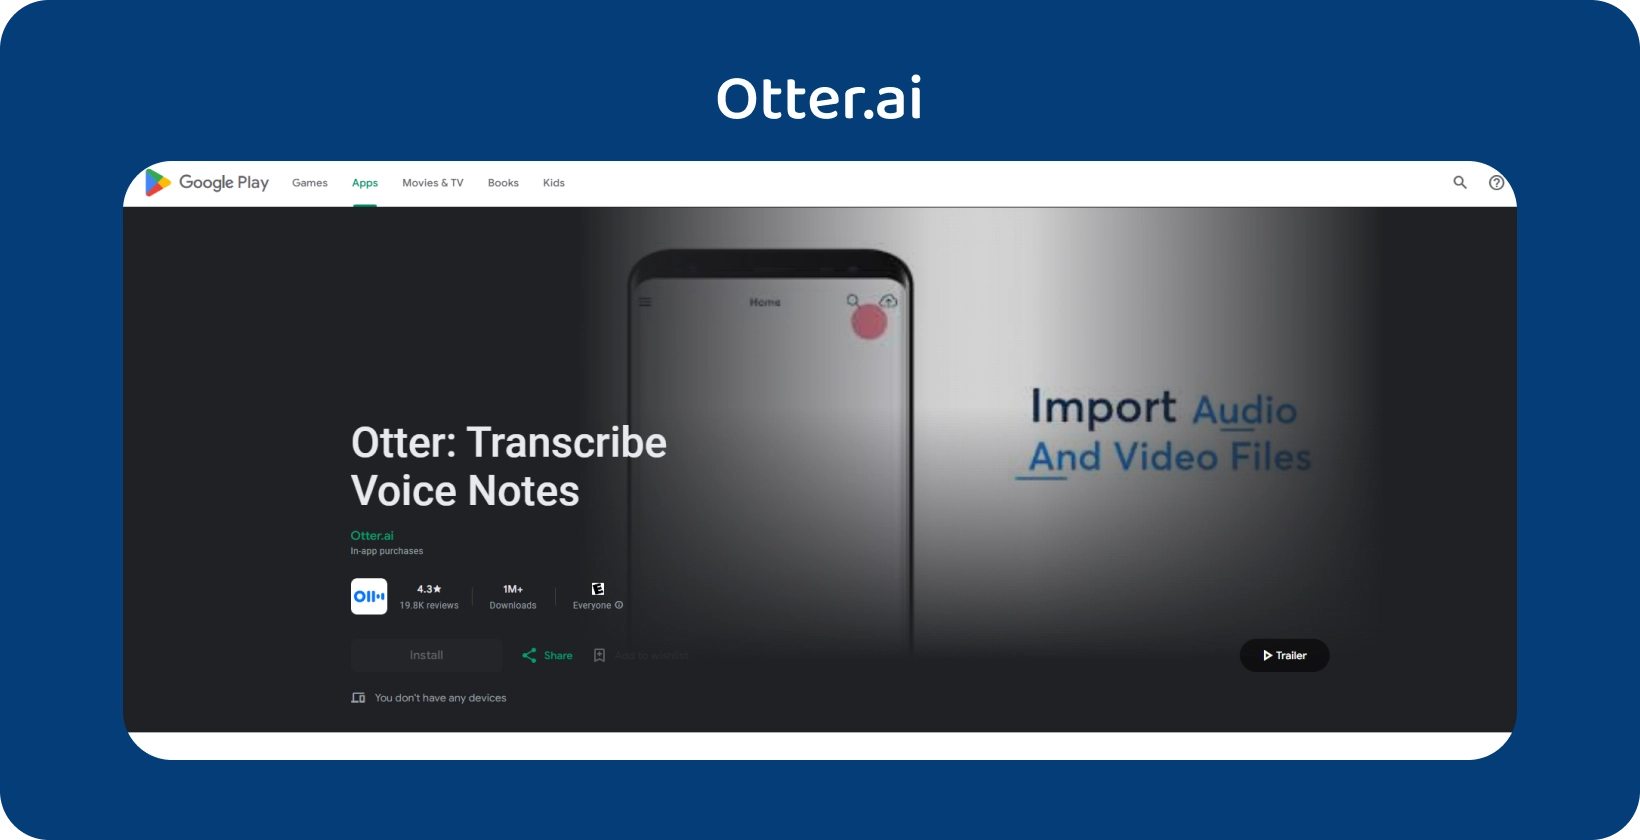 Otter.ai додаток на Google Play з можливістю транскрипції голосових нотаток та імпорту аудіо/відео файлів.